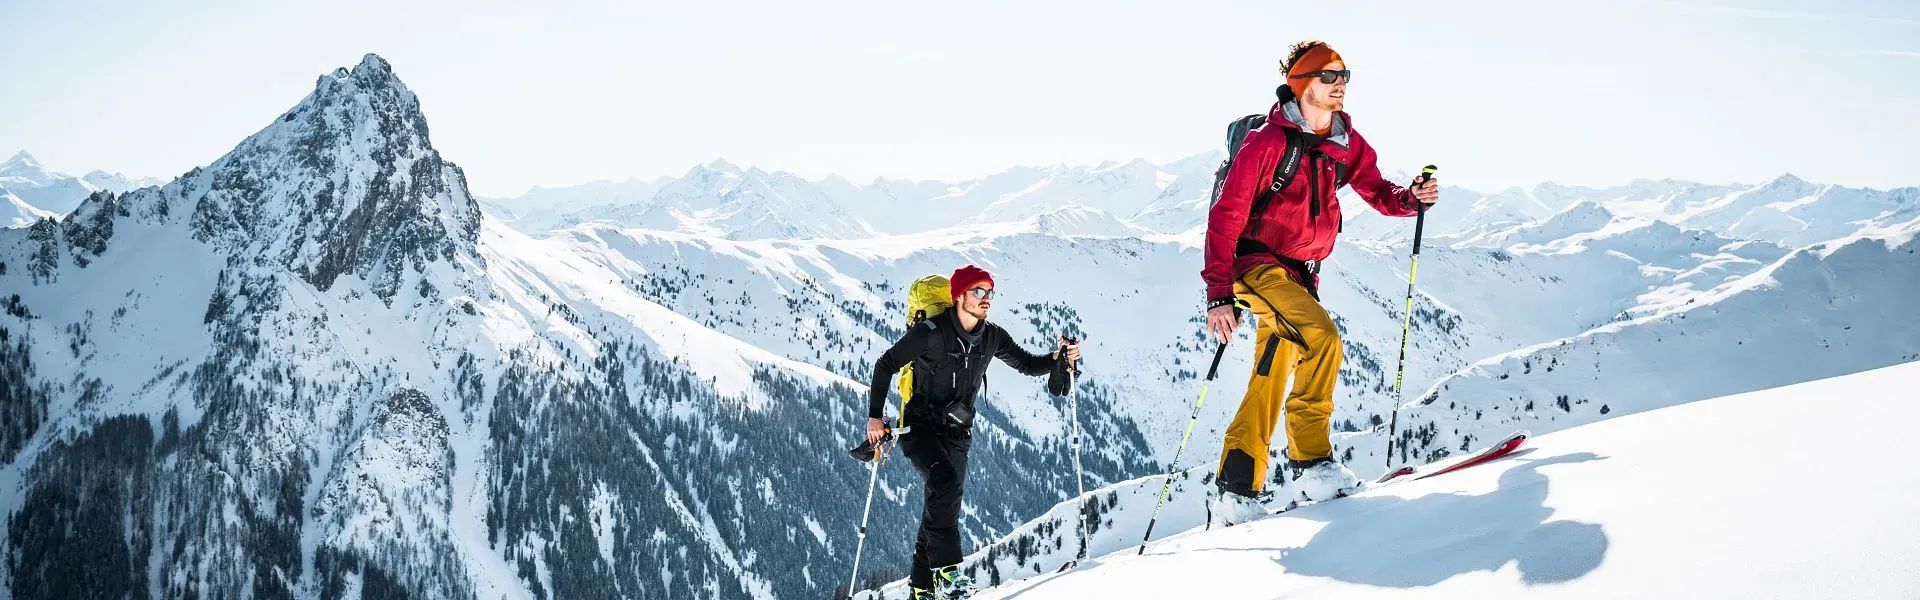 Skitouren mit Bergpanorama